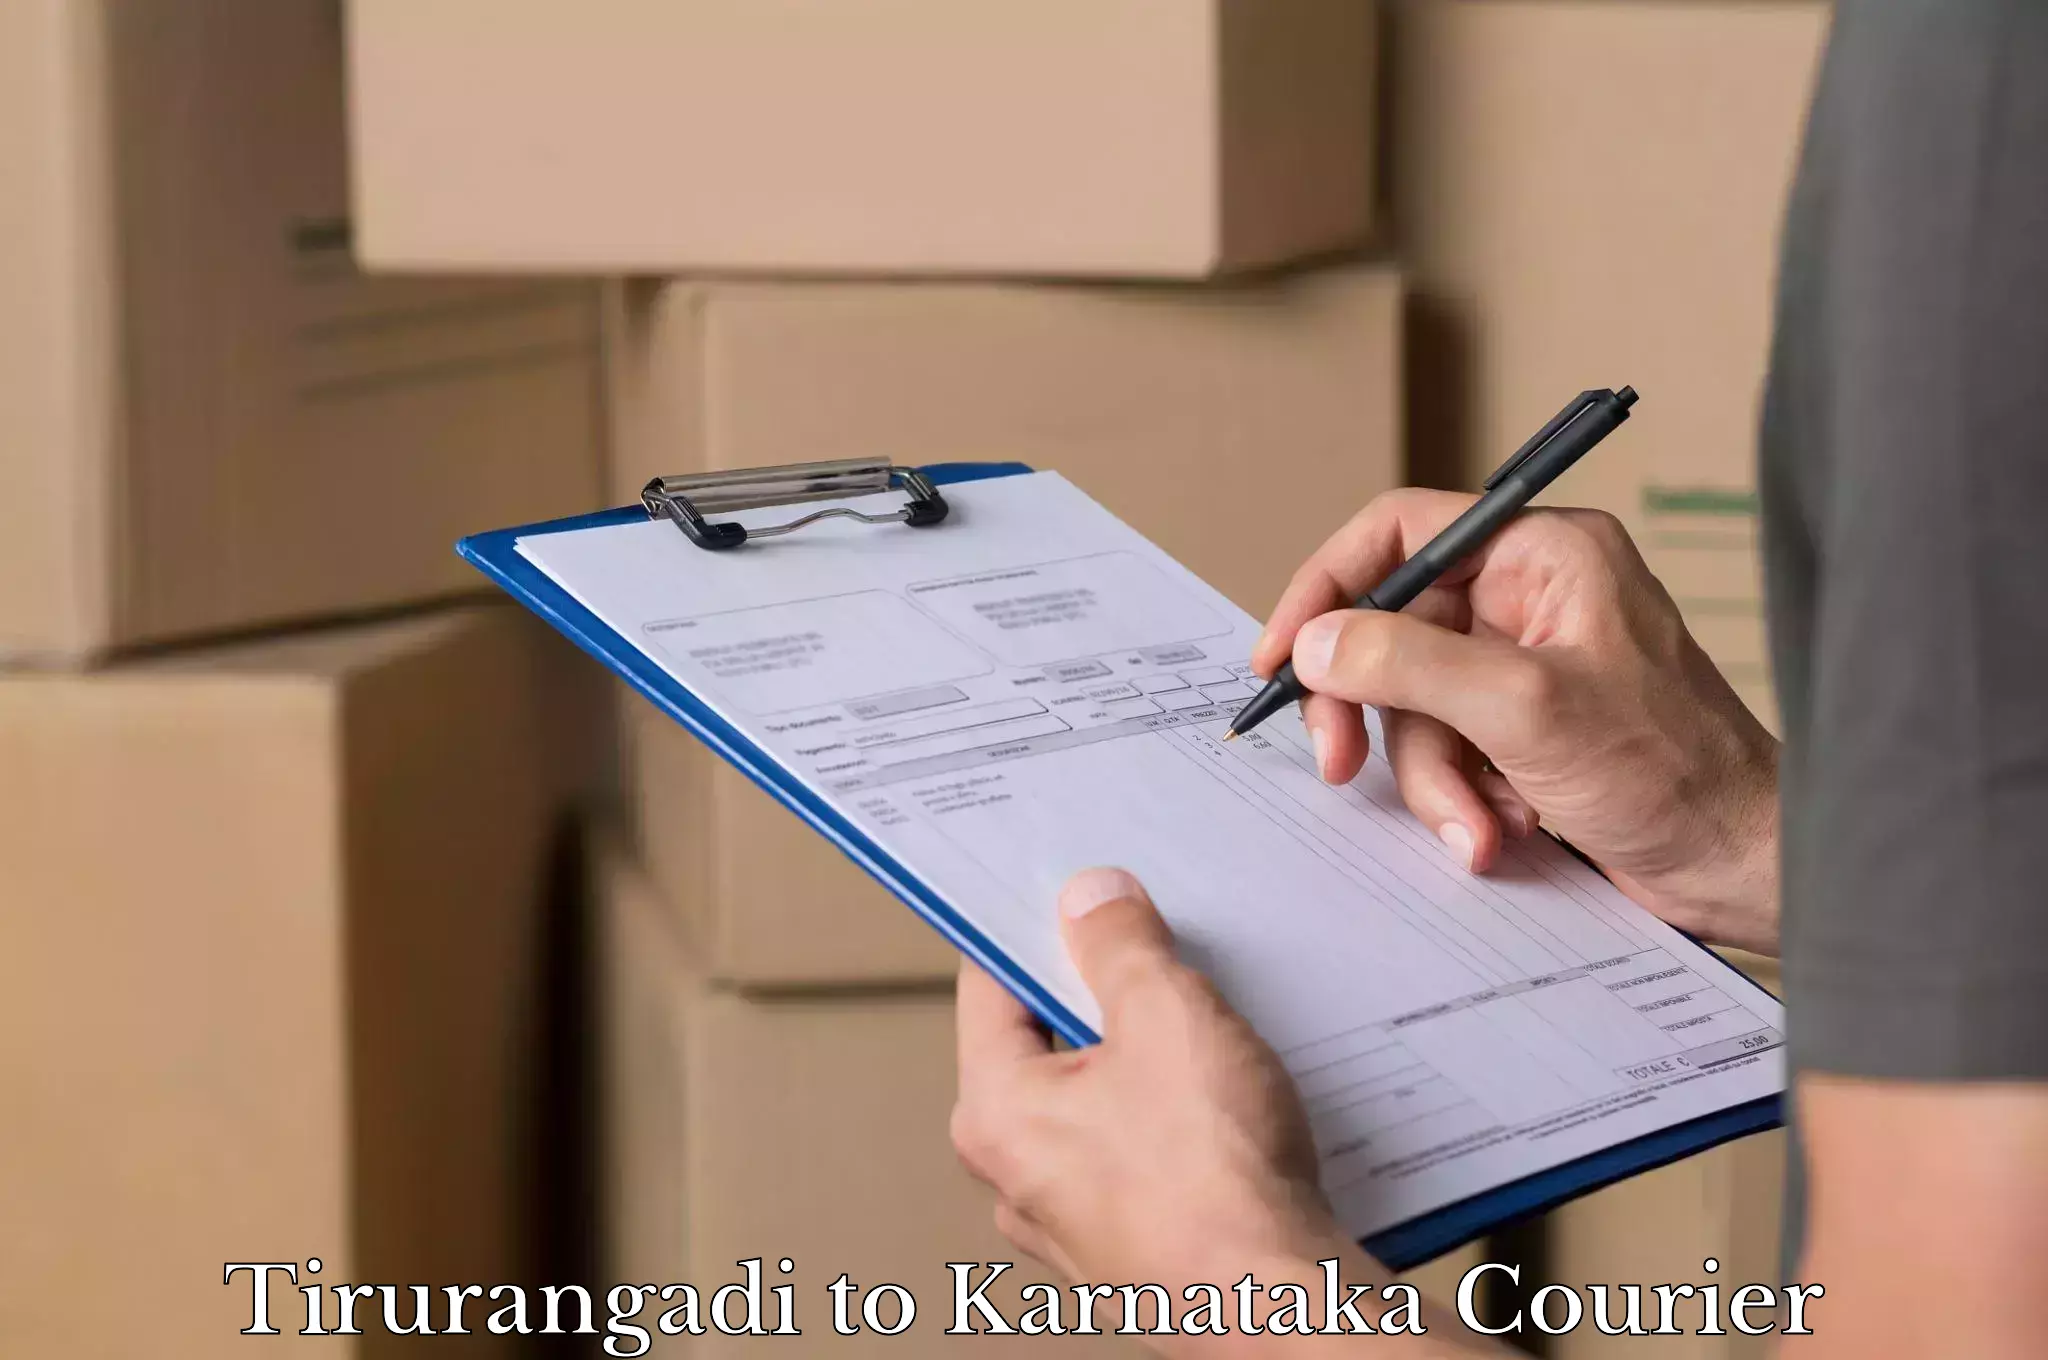 Baggage relocation service Tirurangadi to Karnataka